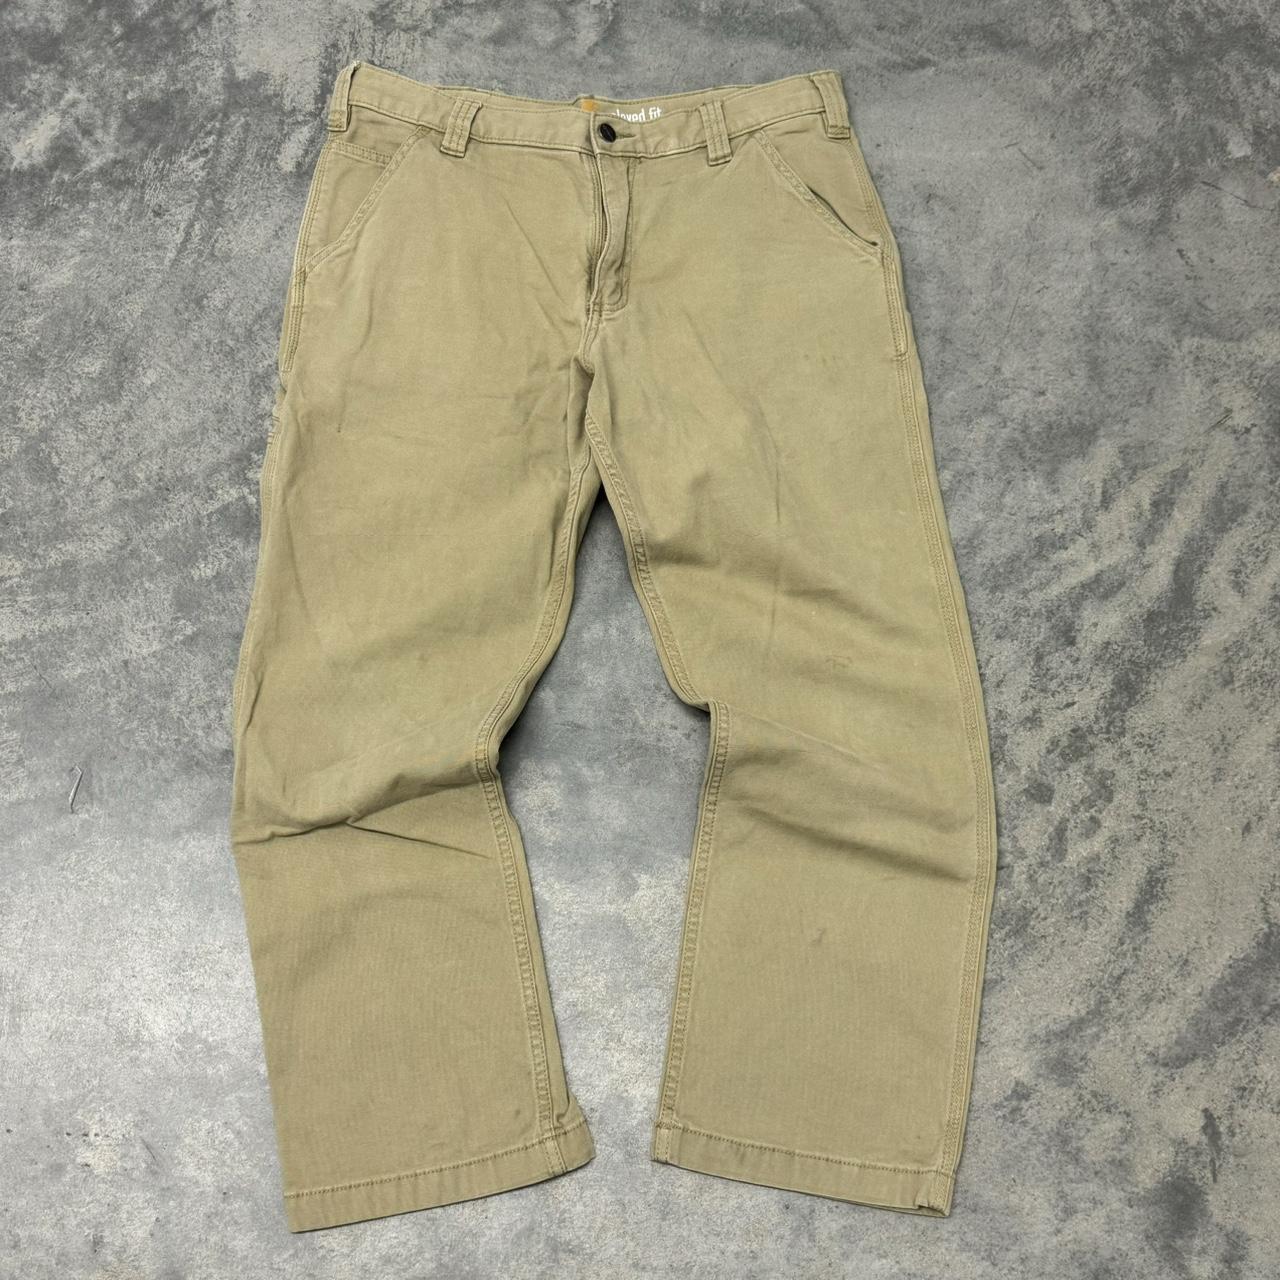 Carhartt Workwear Carpenter Pants 34 x 30... - Depop